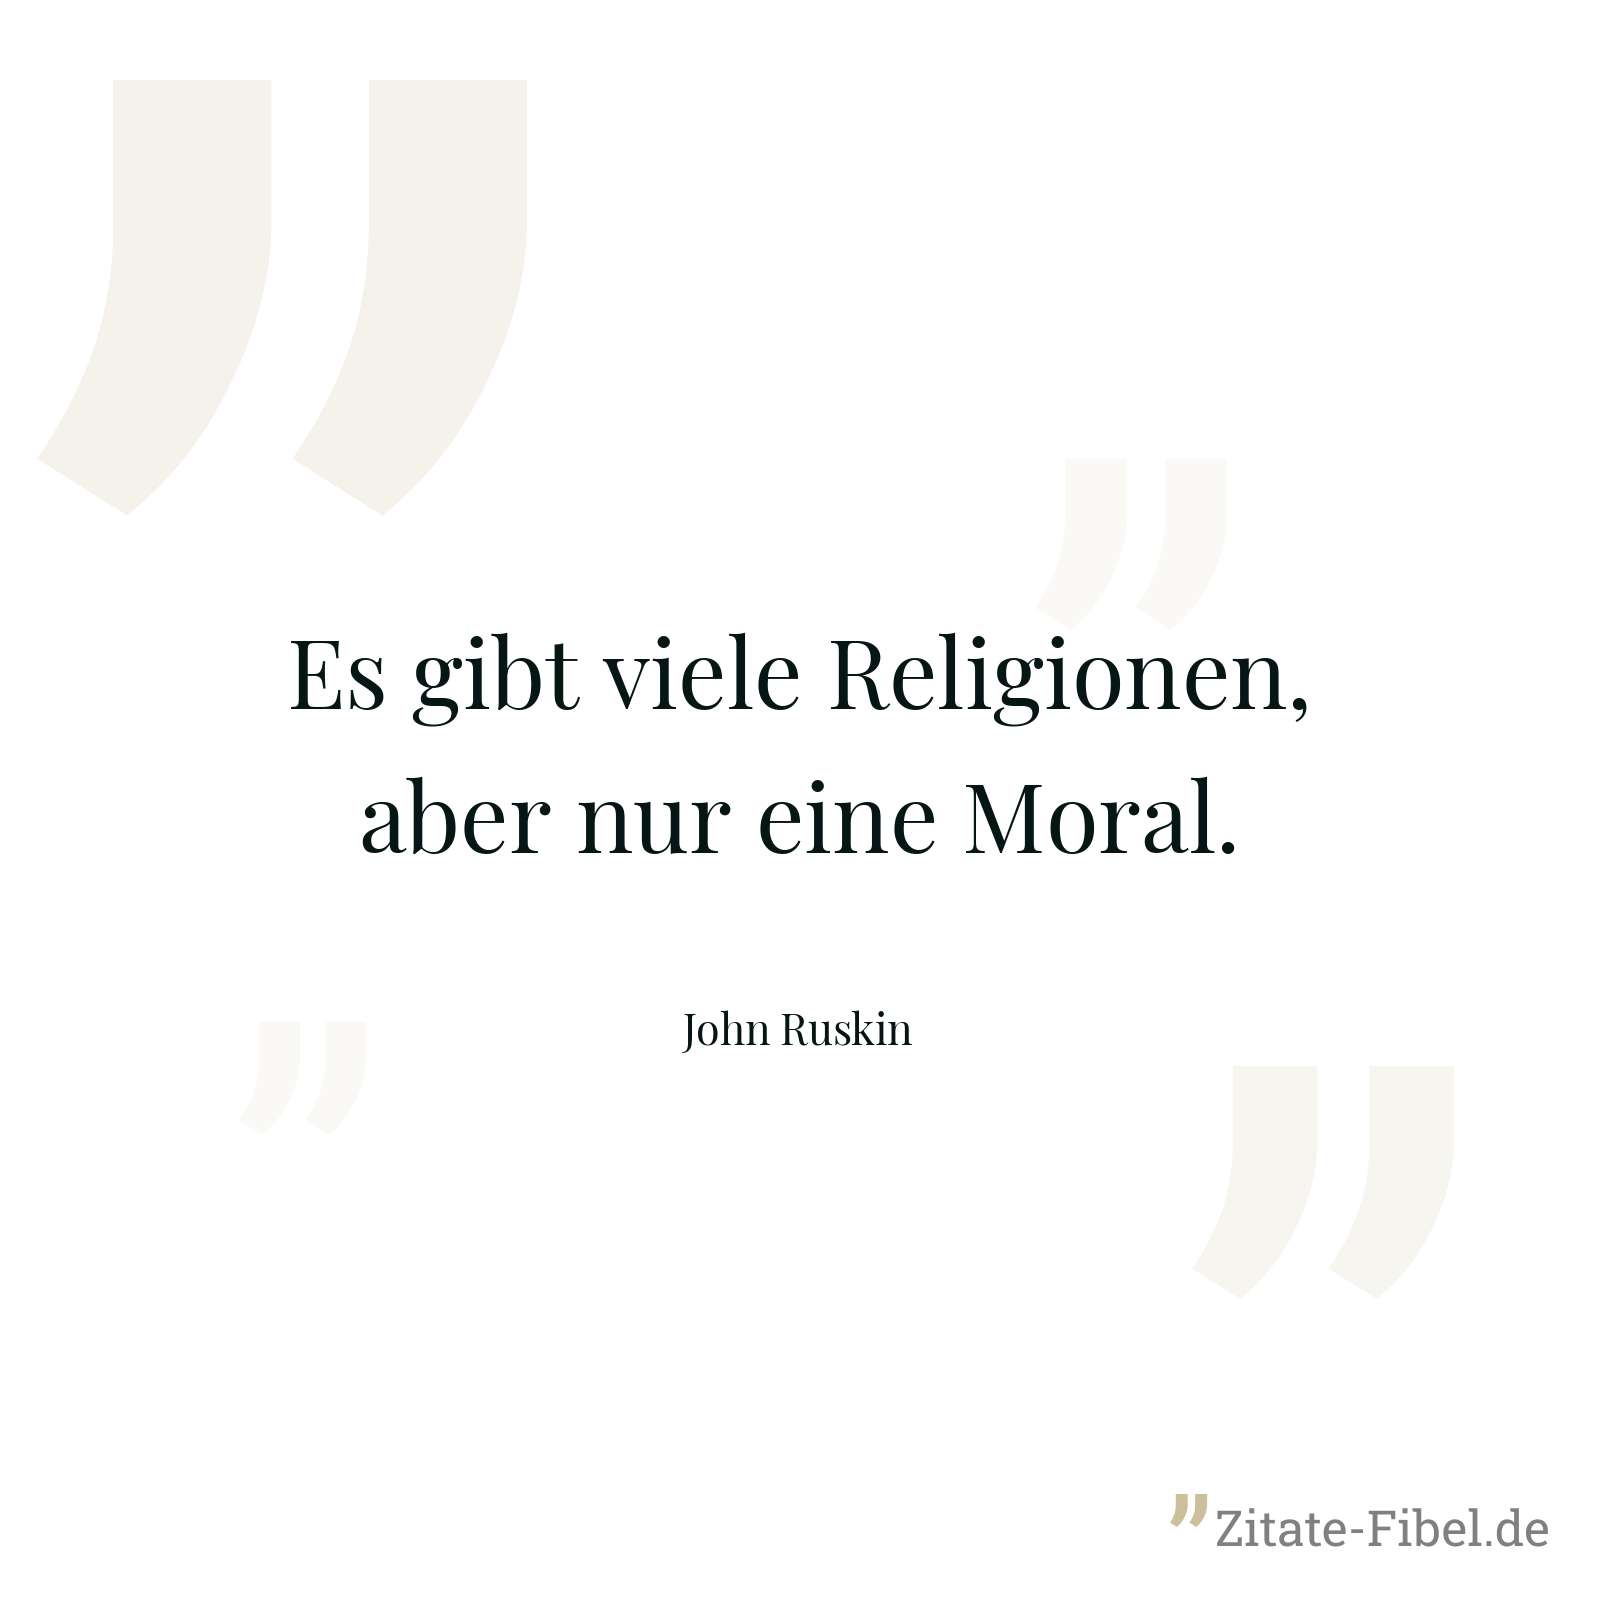 Es gibt viele Religionen, aber nur eine Moral. - John Ruskin